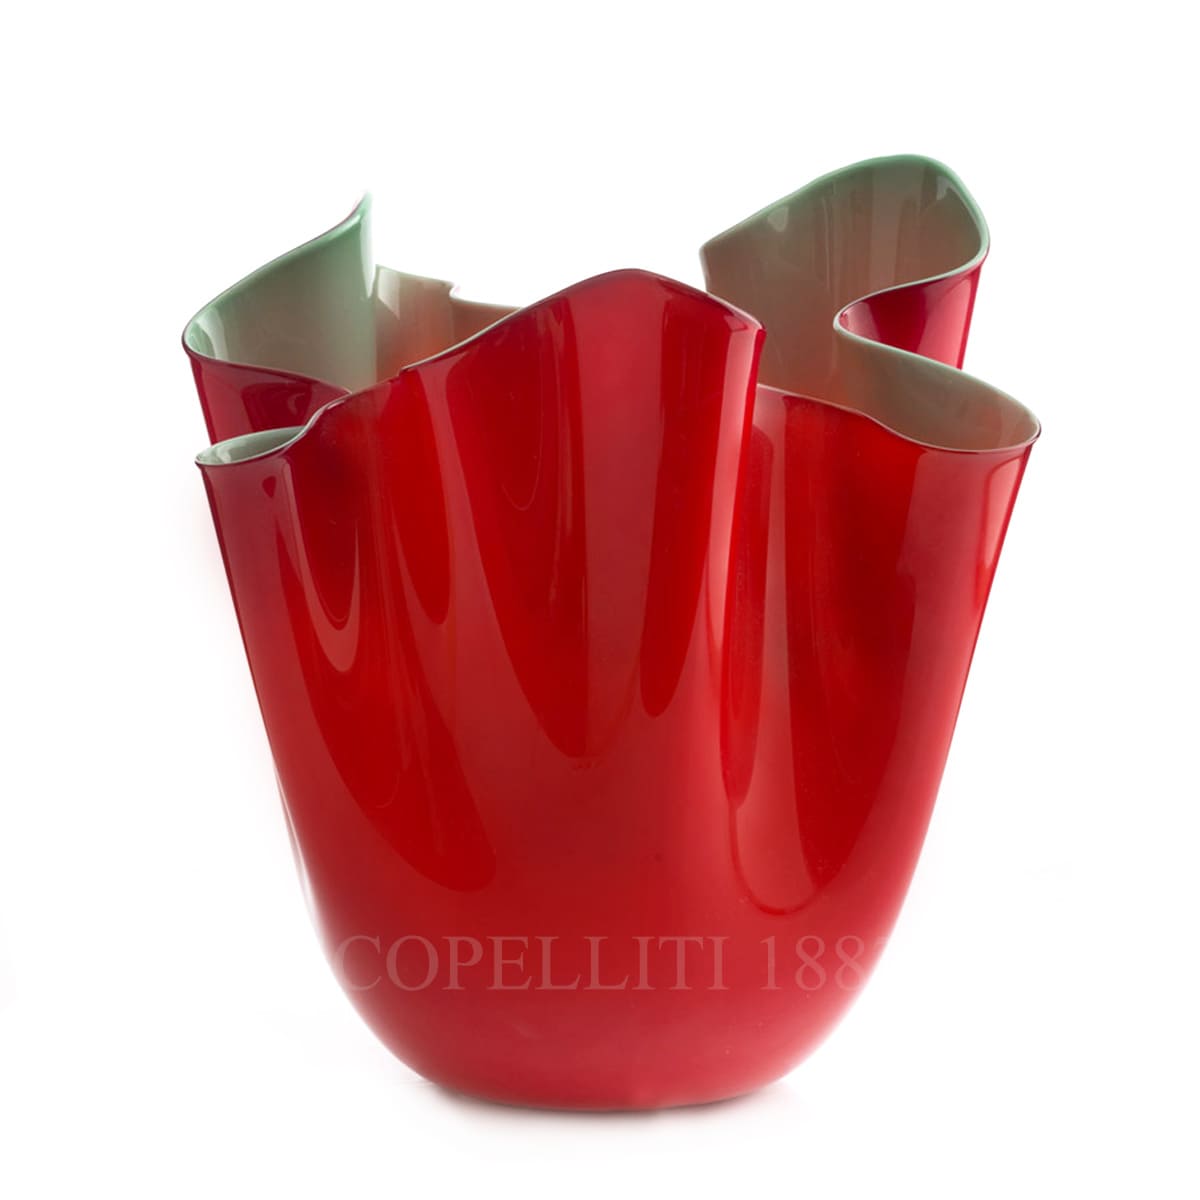 venini gift fazzoletto red vase